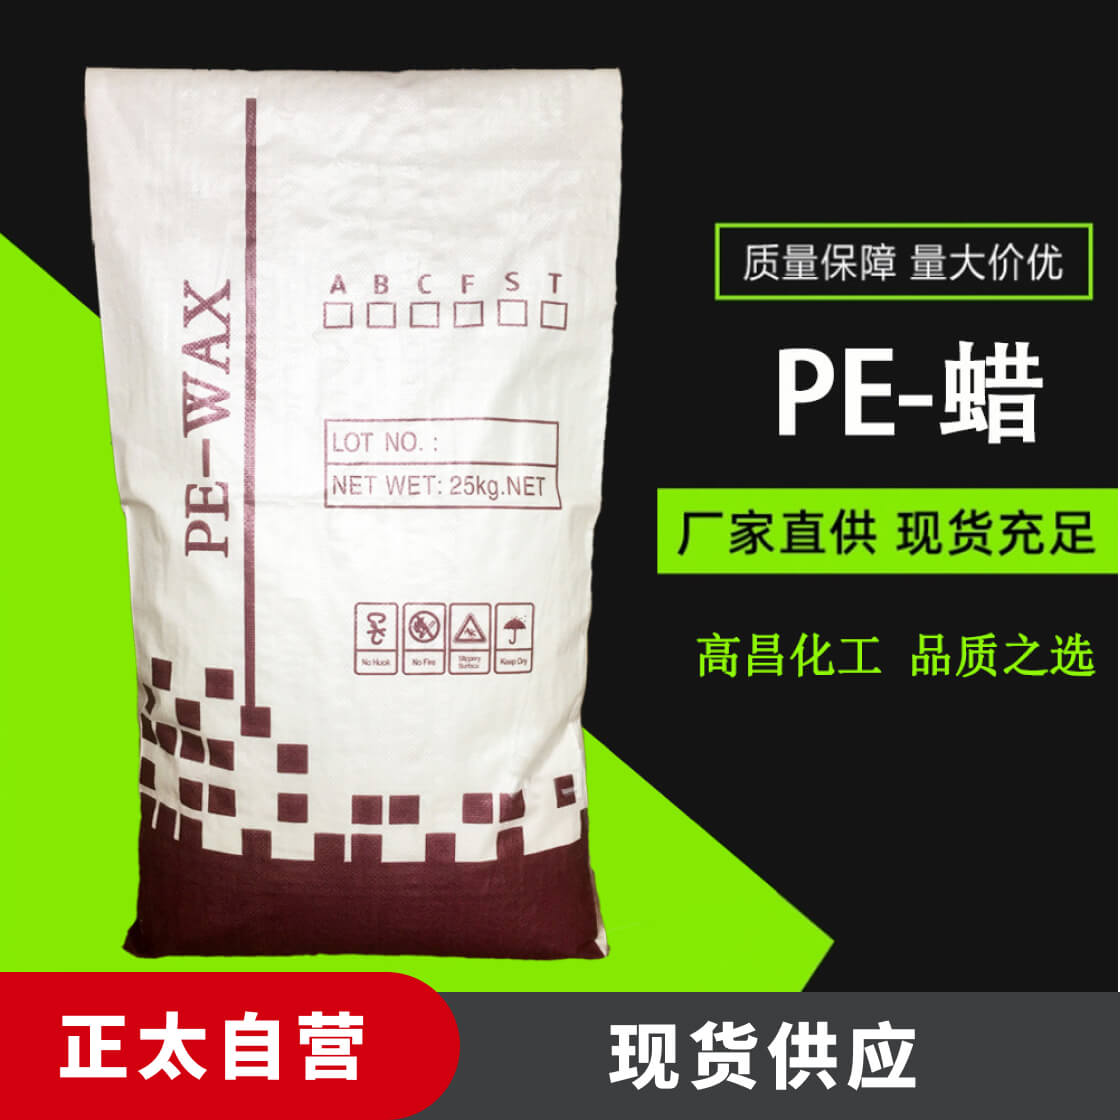 氧化聚乙烯蜡 PE蜡 PE-WAX脱模增塑剂高密度氧化聚乙烯蜡